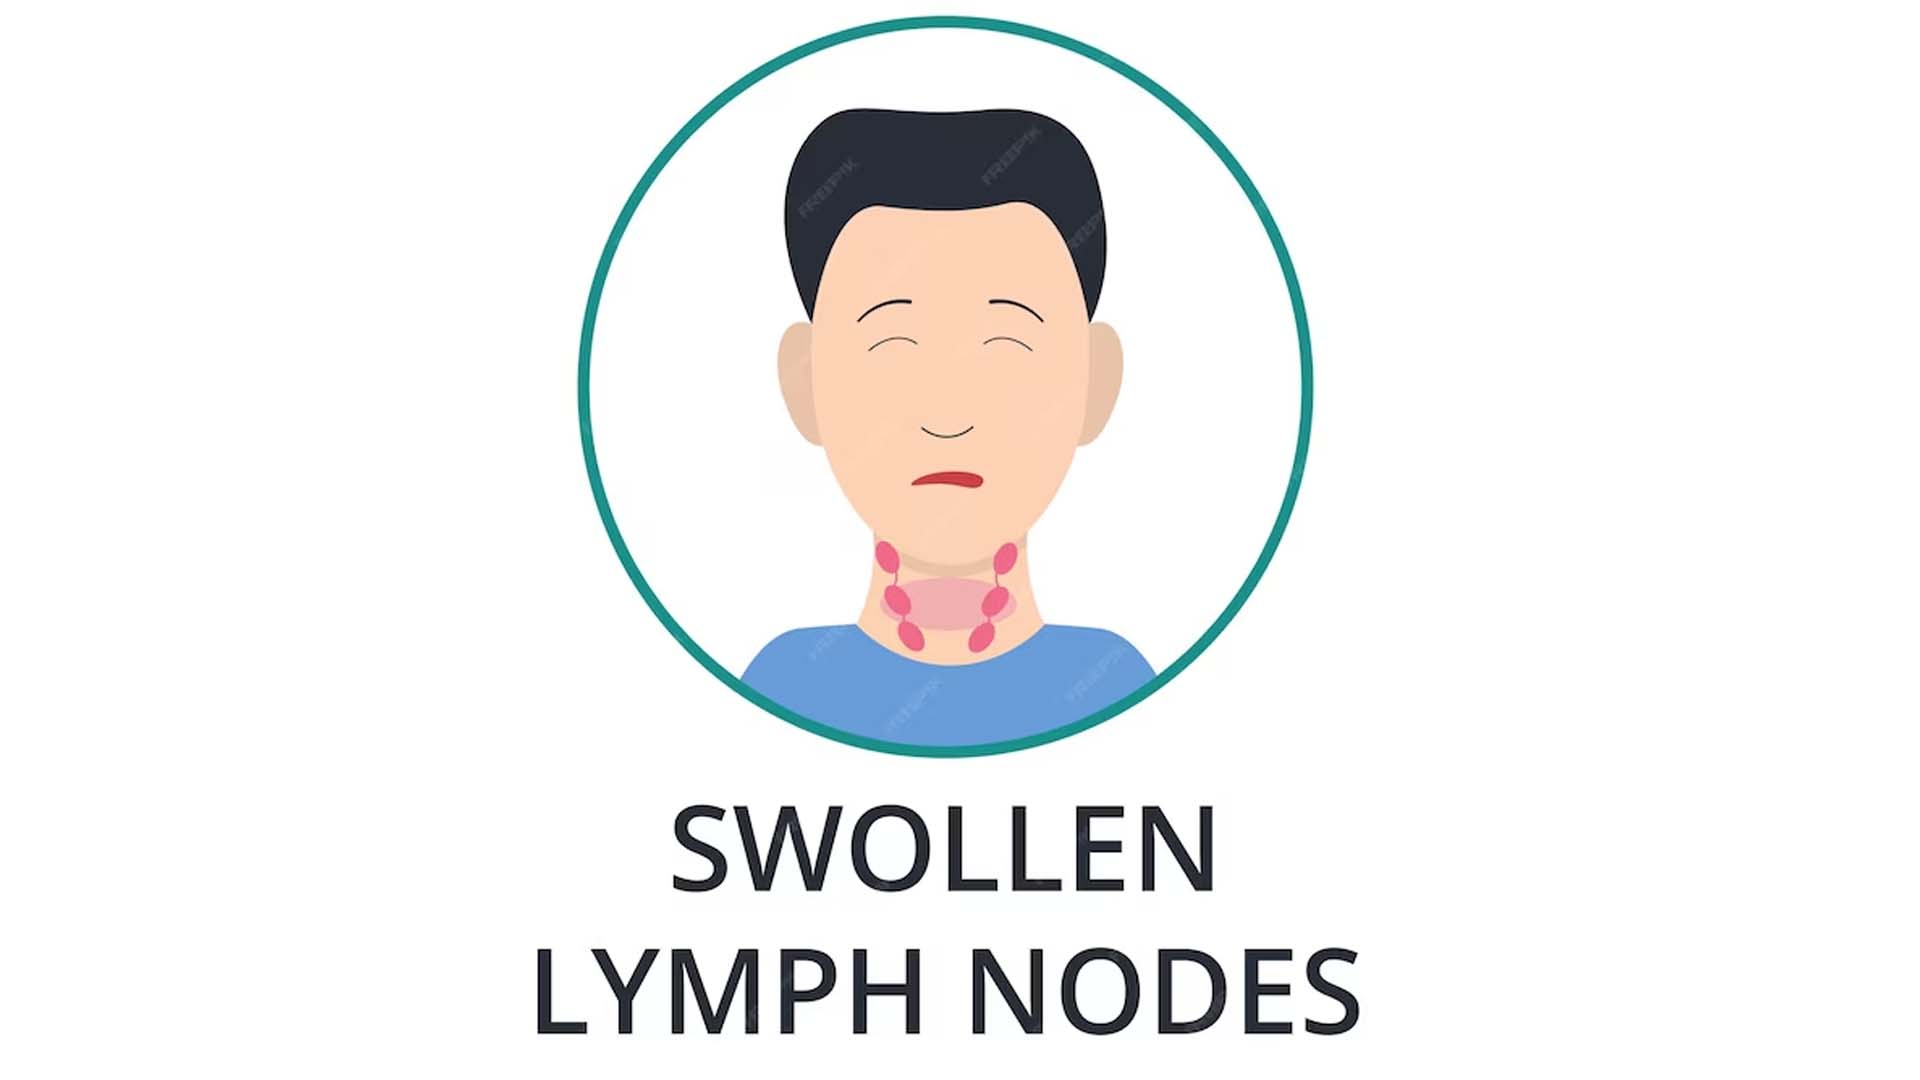 Swollen Lymph Nodes Cartoon